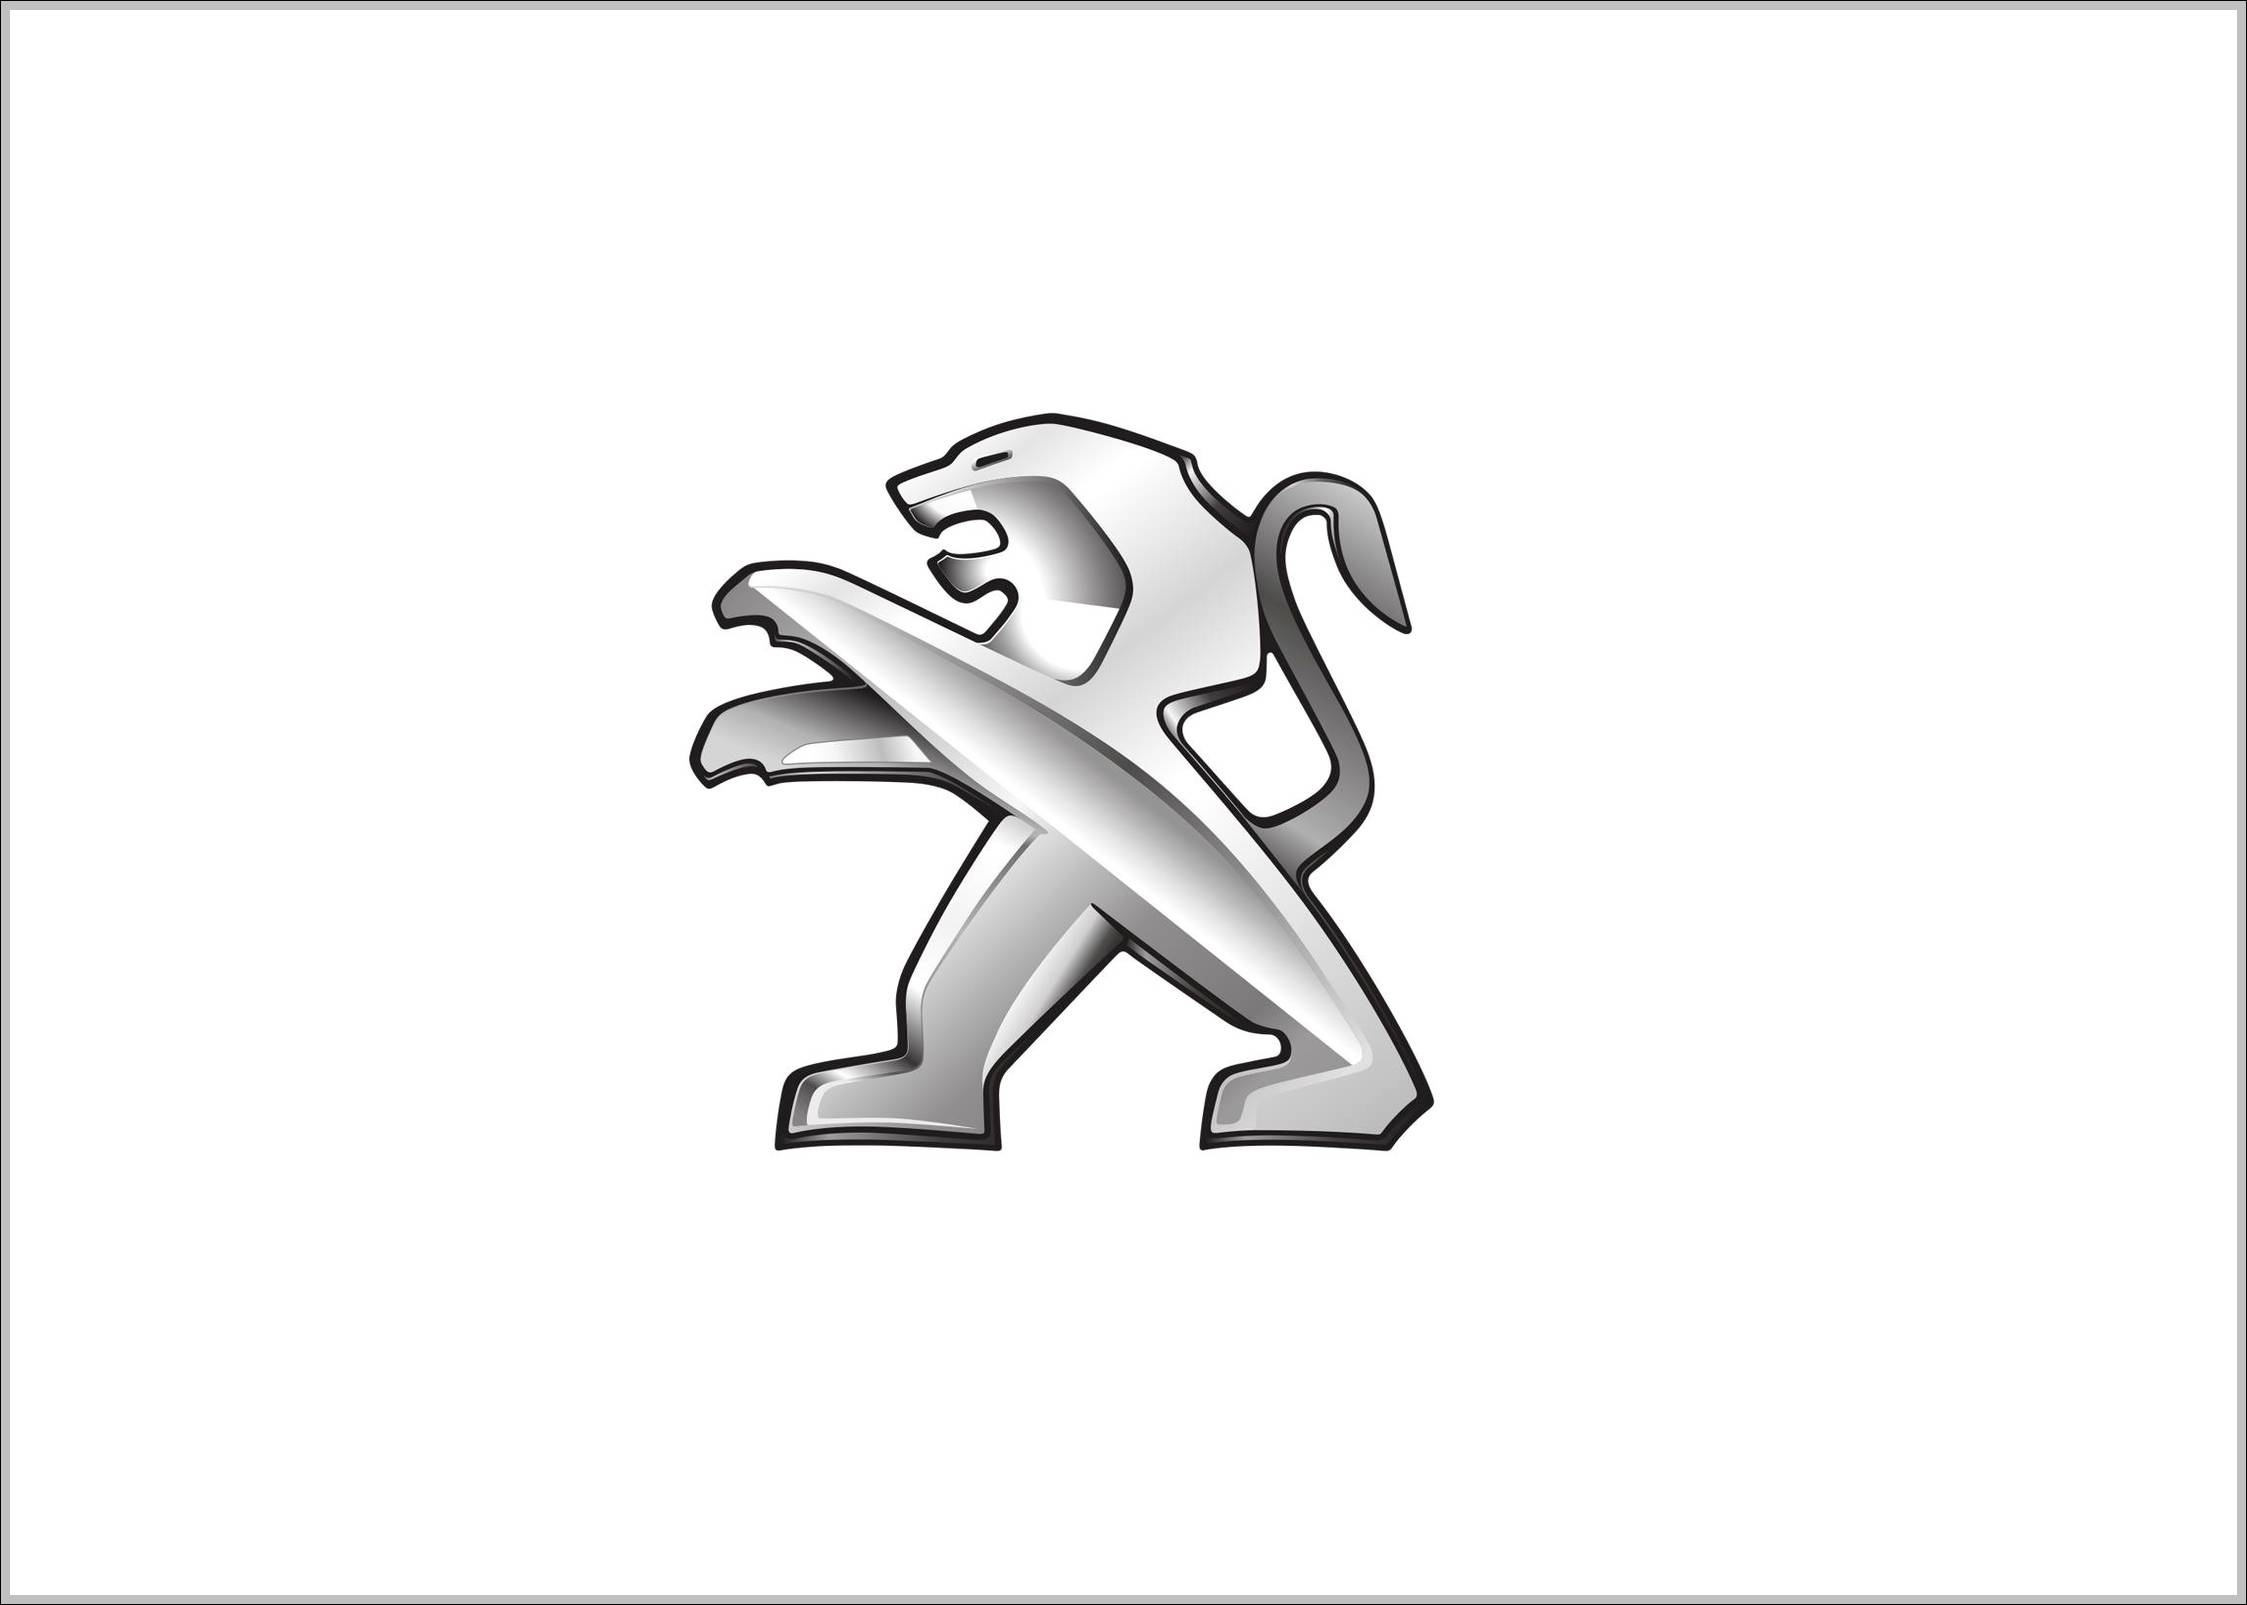 Peugeot logo lion